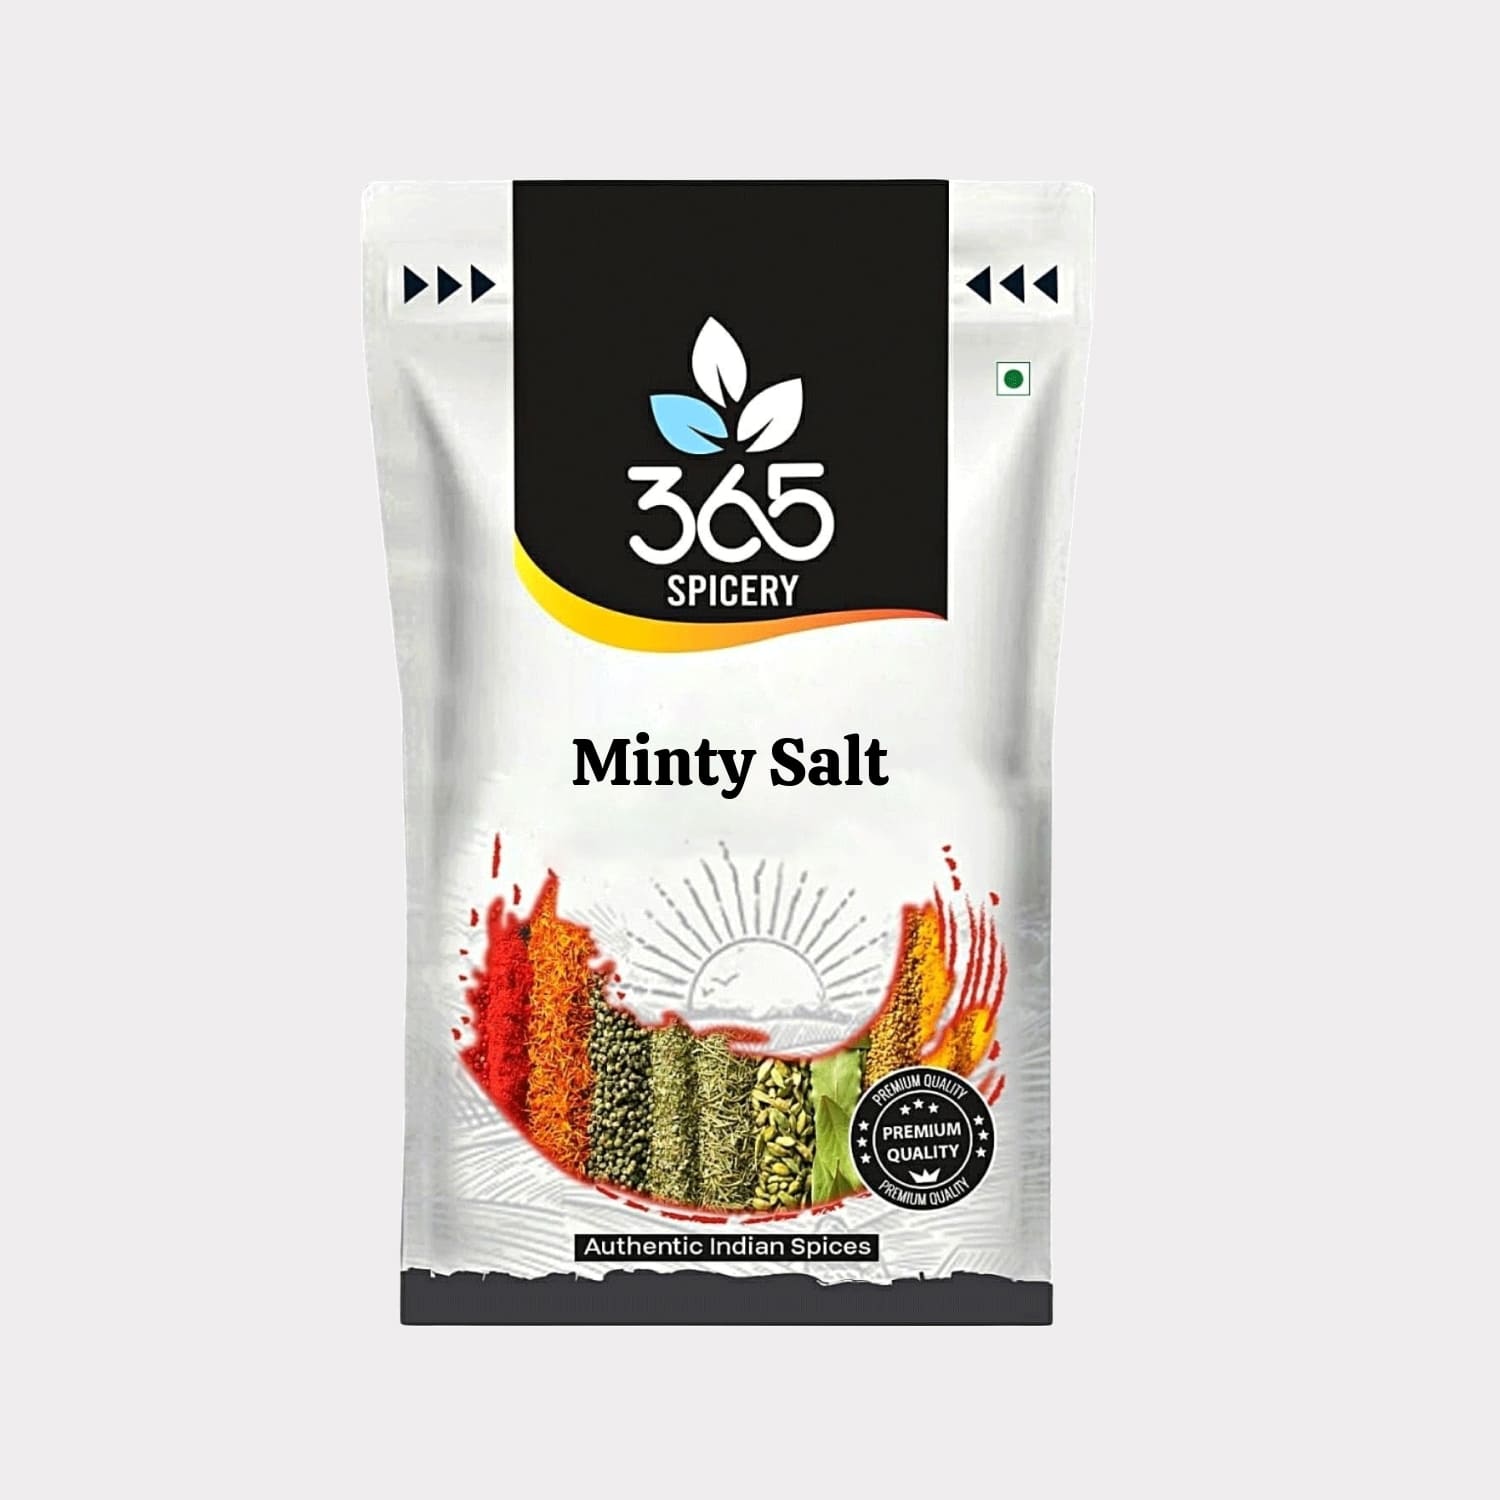 Minty Salt